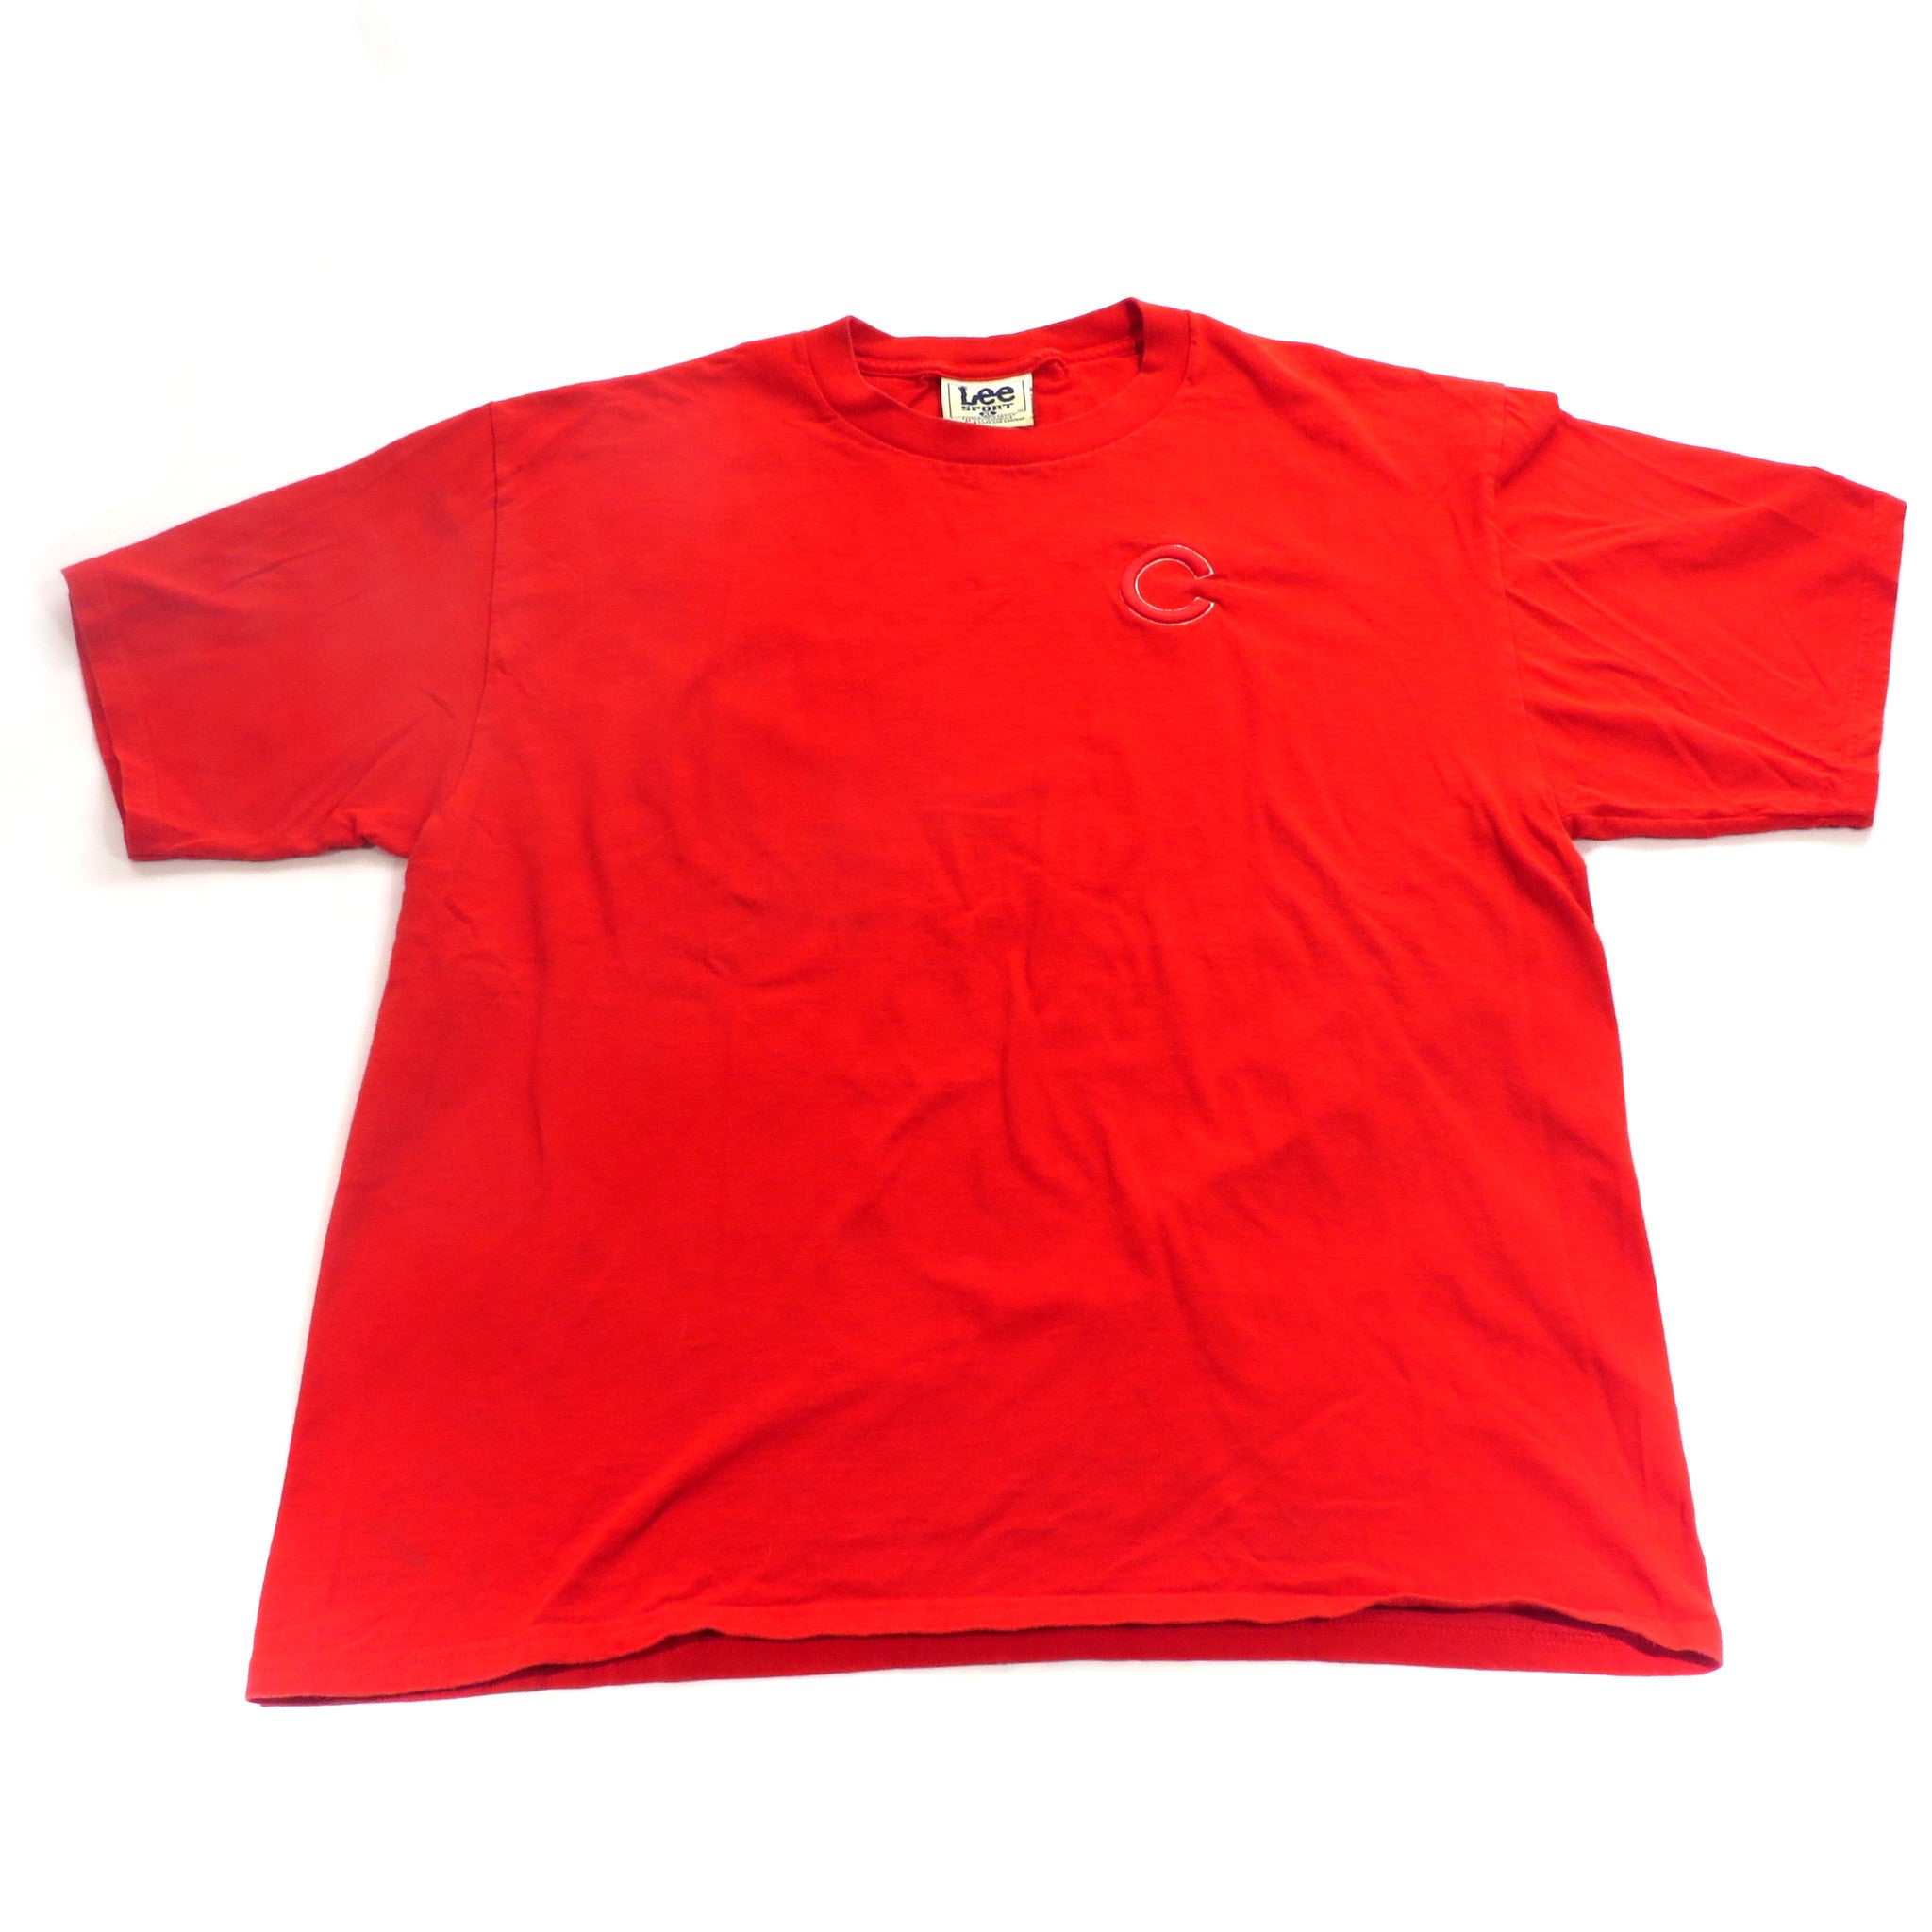 Vintage Cincinnati Reds T-Shirt Sz XL